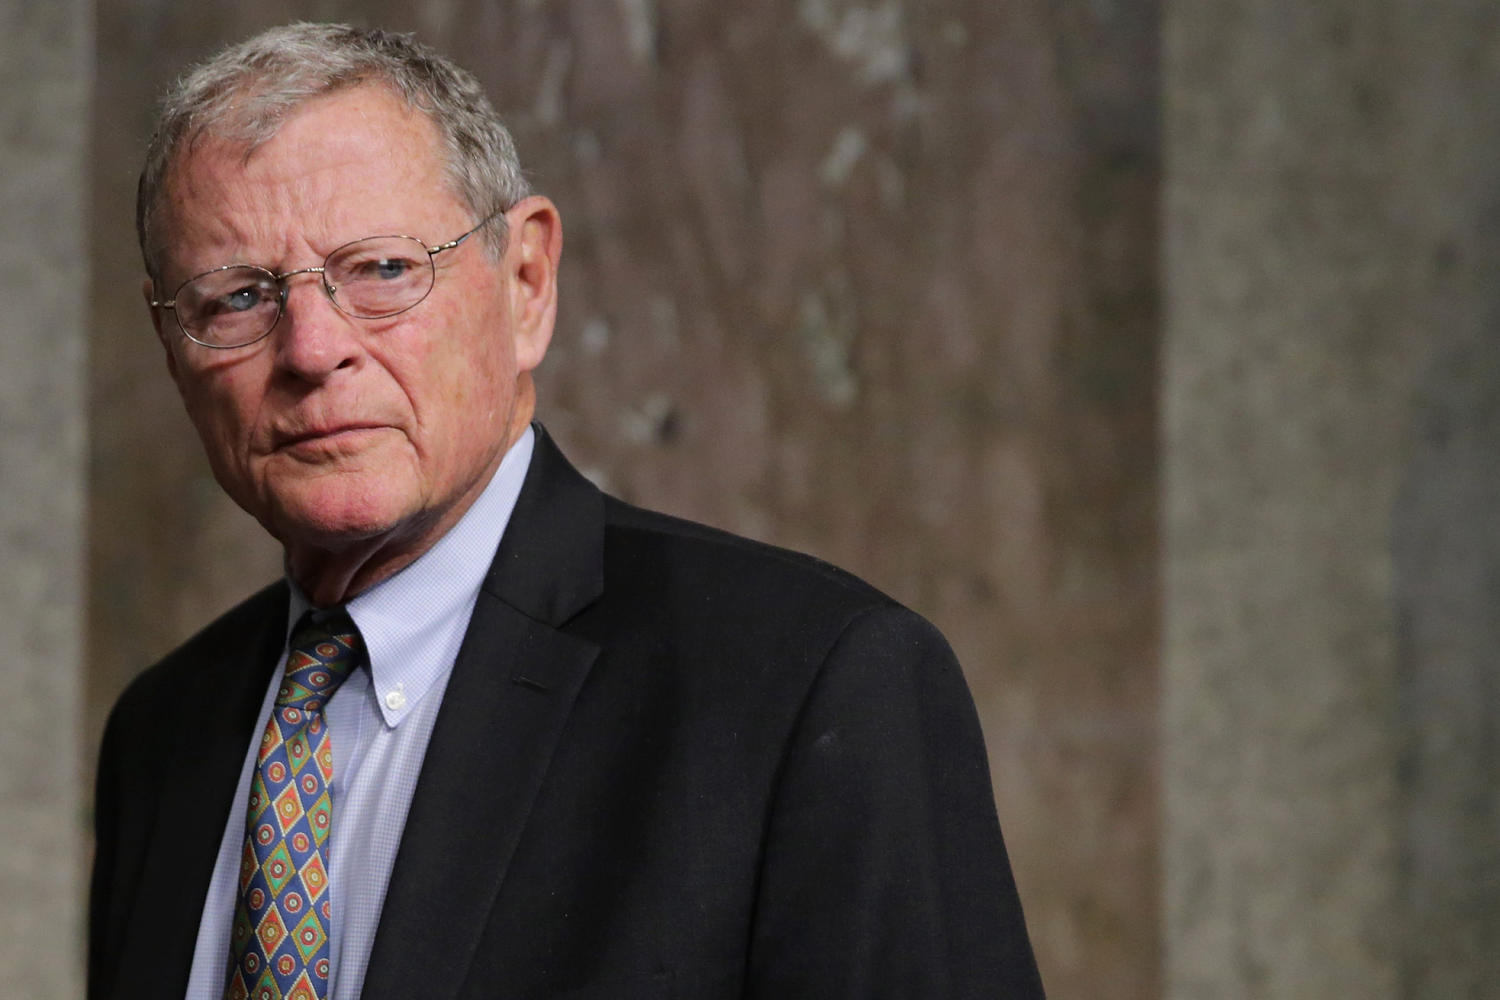 Jim Inhofe, climate crisis-denying former senator, dies at 89